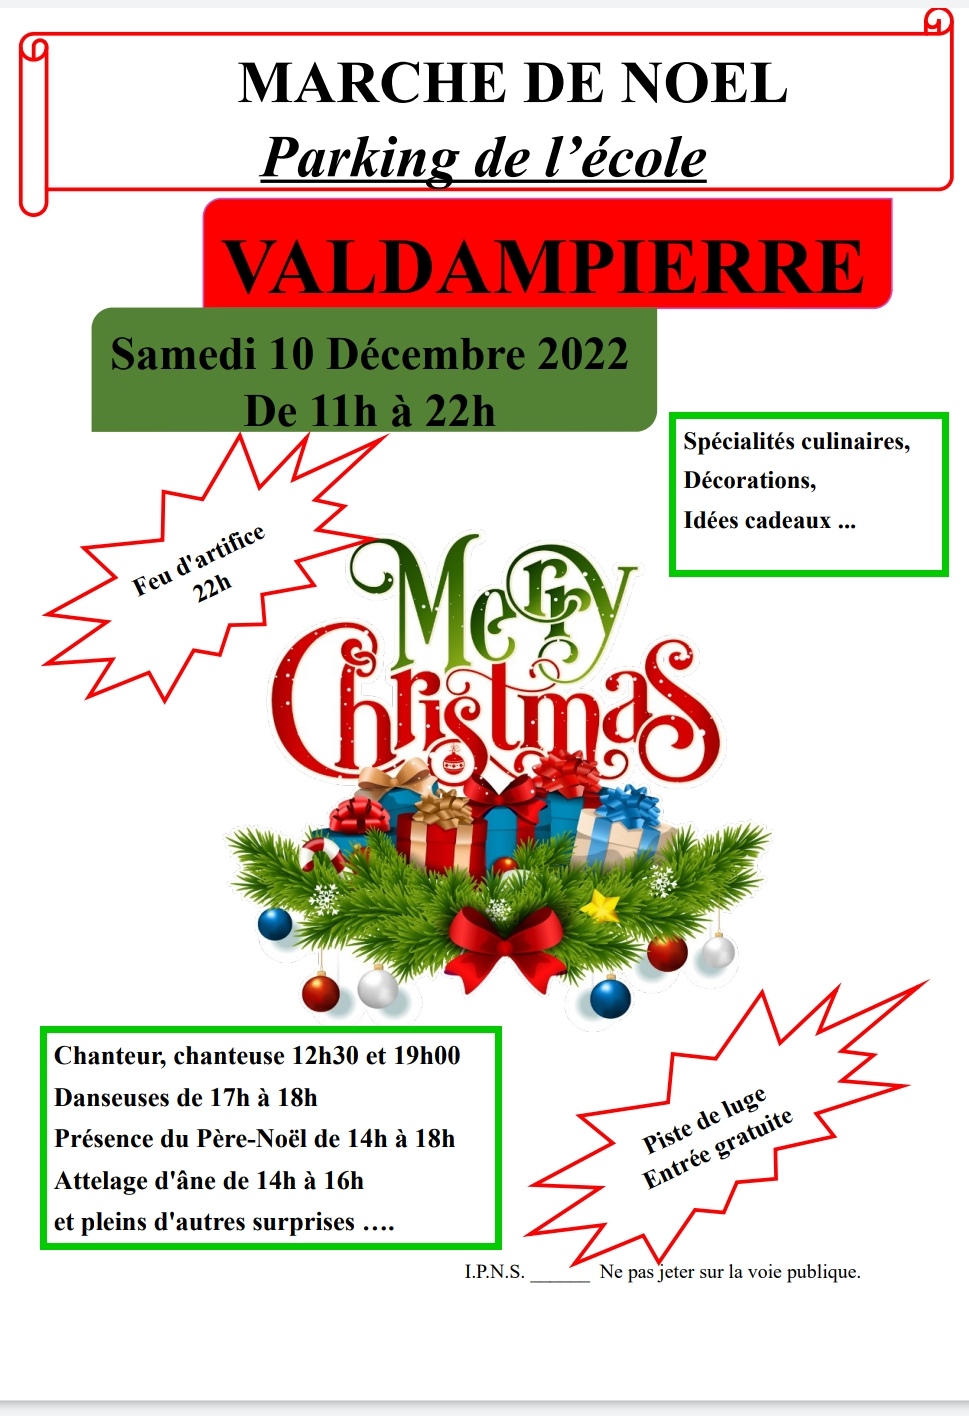 Marché de Noël de Valdampierre 